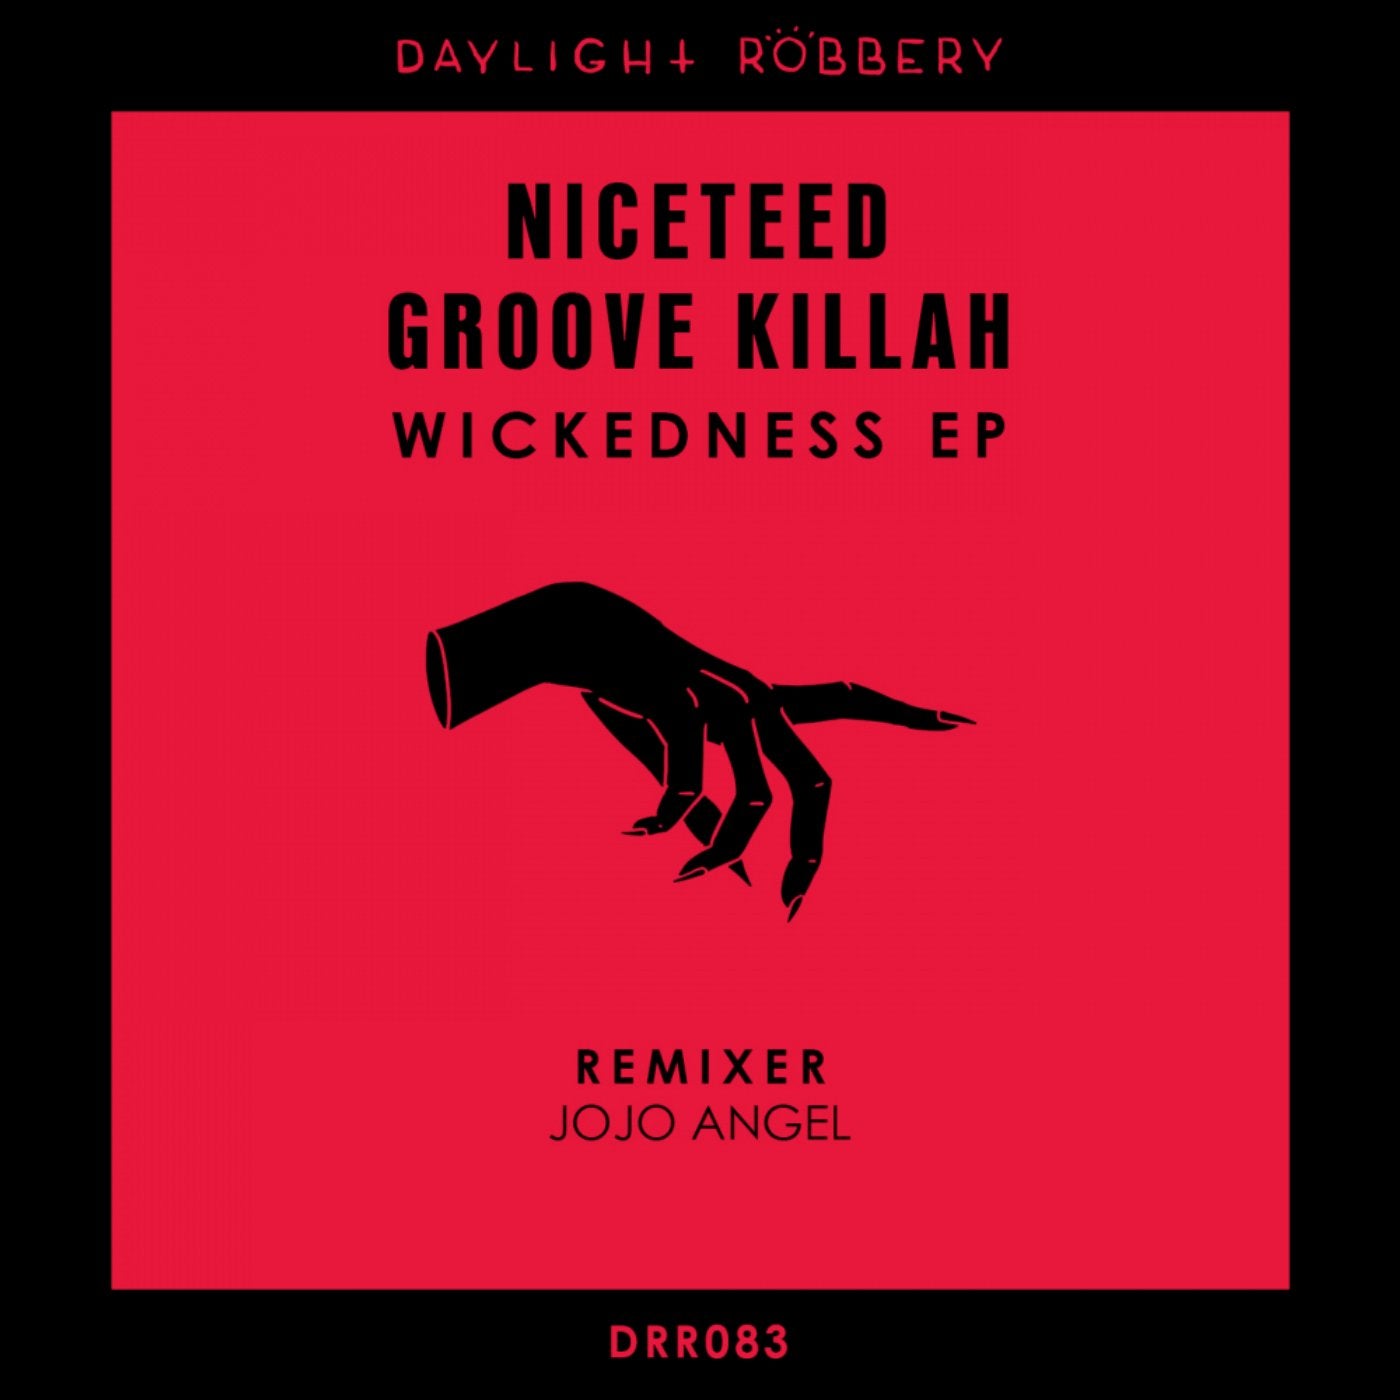 Wickedness EP